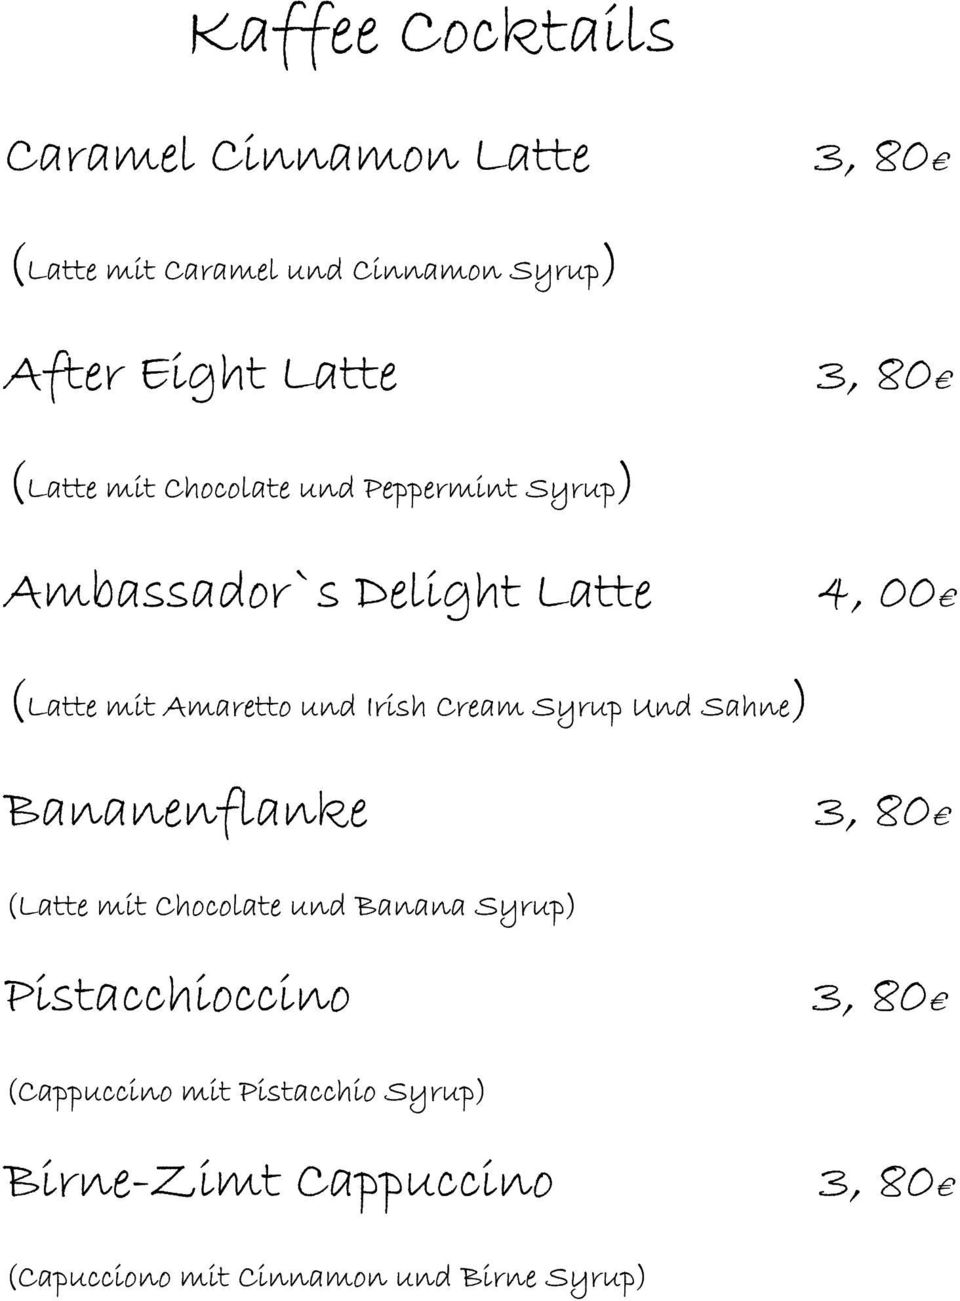 Irish Cream Syrup Und Sahne) Bananenflanke 3, 80 (Latte mit Chocolate und Banana Syrup) Pistacchioccino